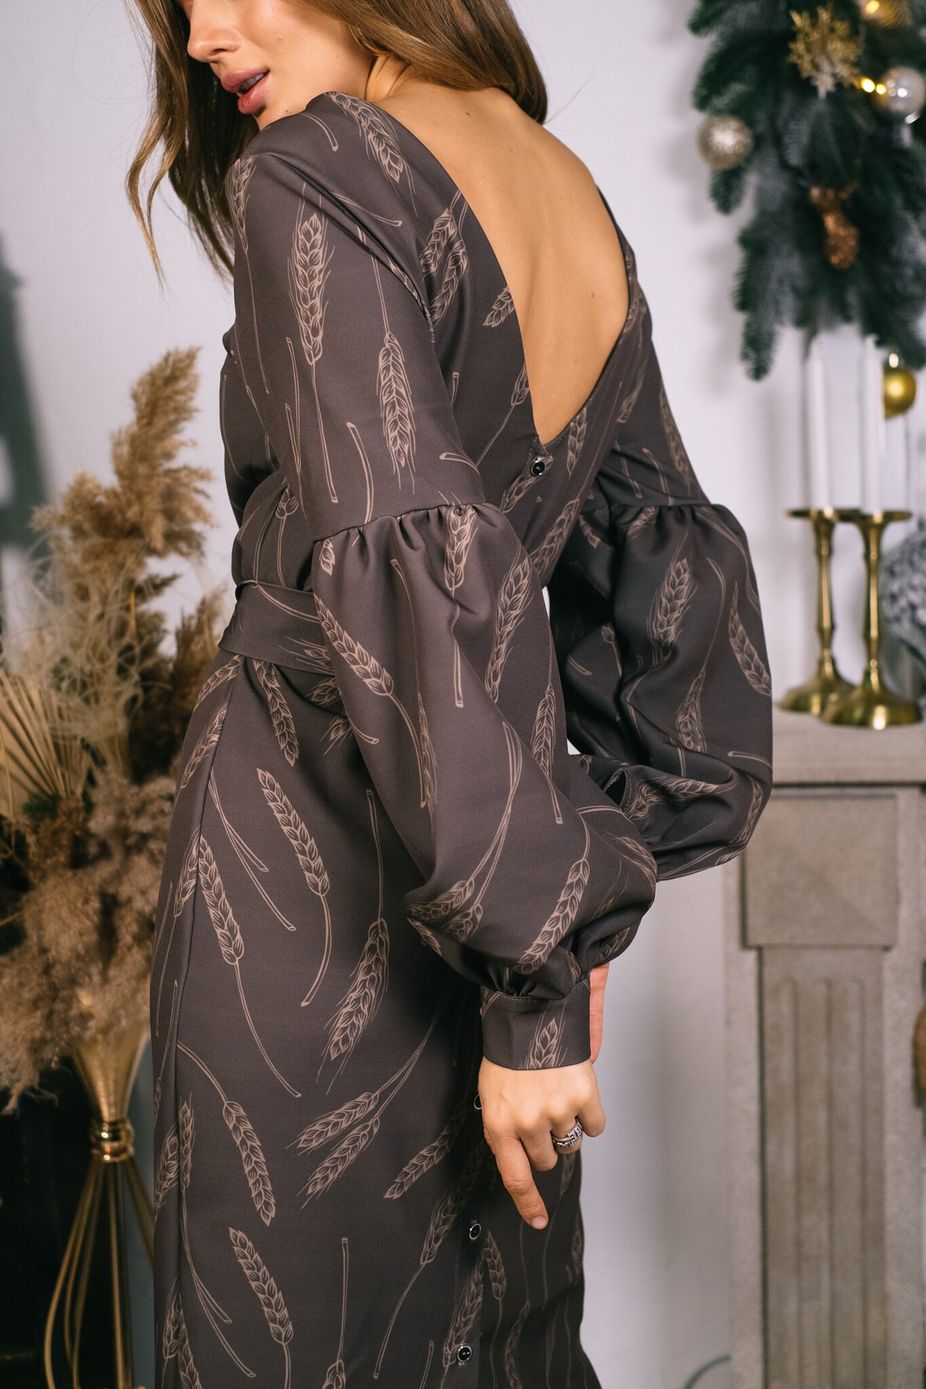 Платье с откытой спиной и объемными рукавами в принт колоски, Шоколадный, XS-S